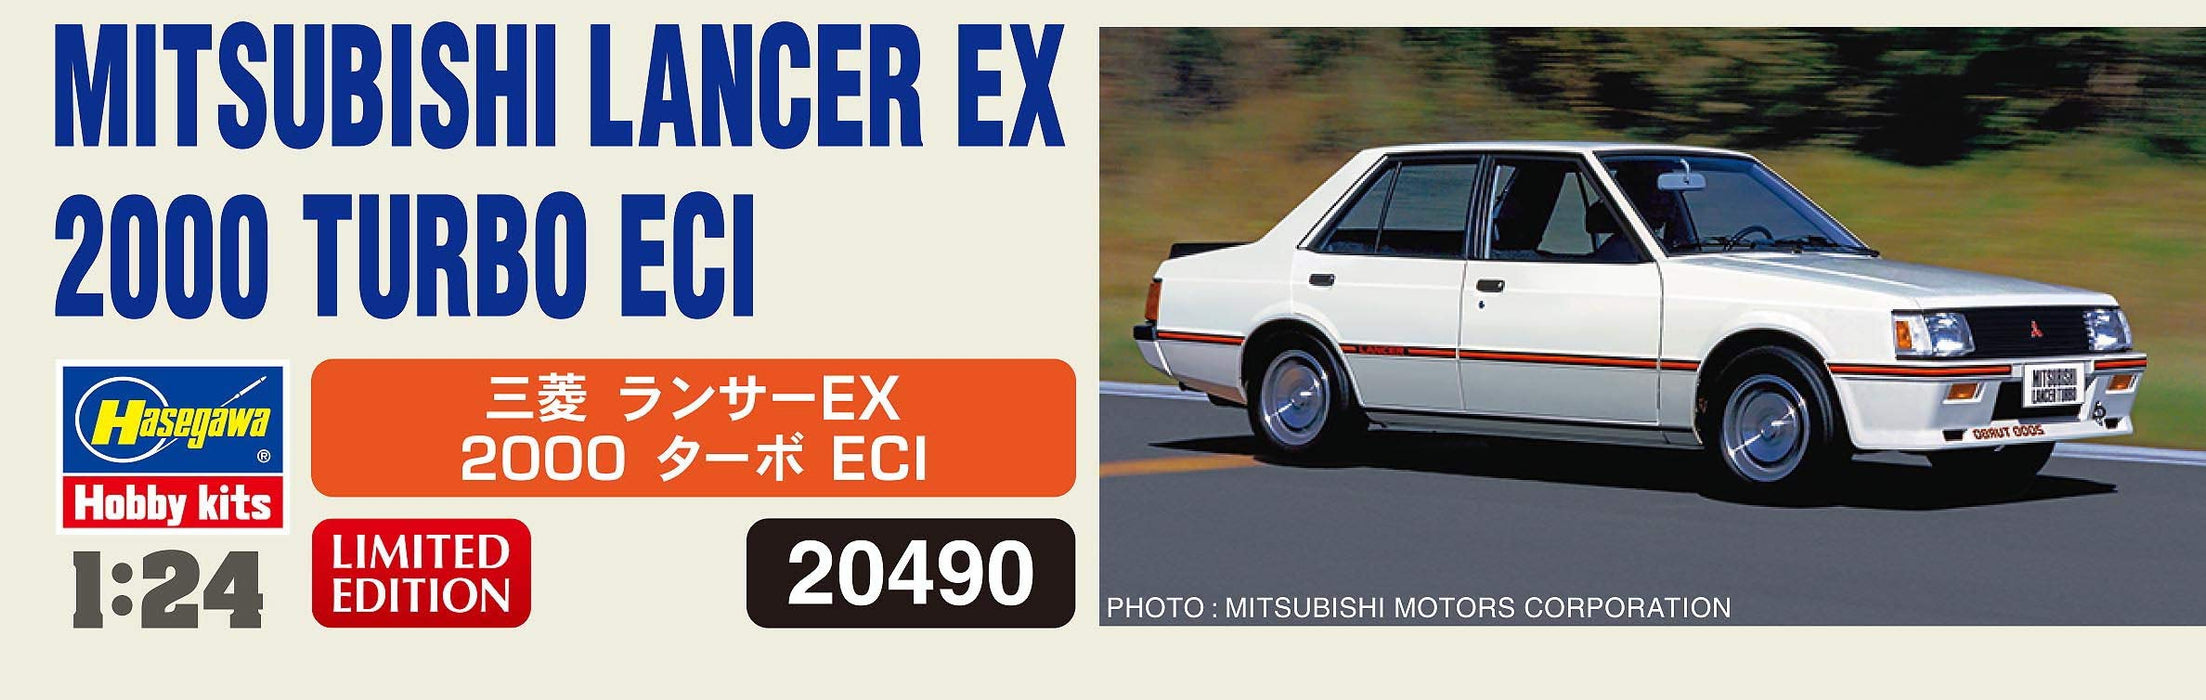 Hasegawa 1/24 Mitsubishi Lancer Ex 2000 Turbo Eci modèles de voitures classiques japonaises